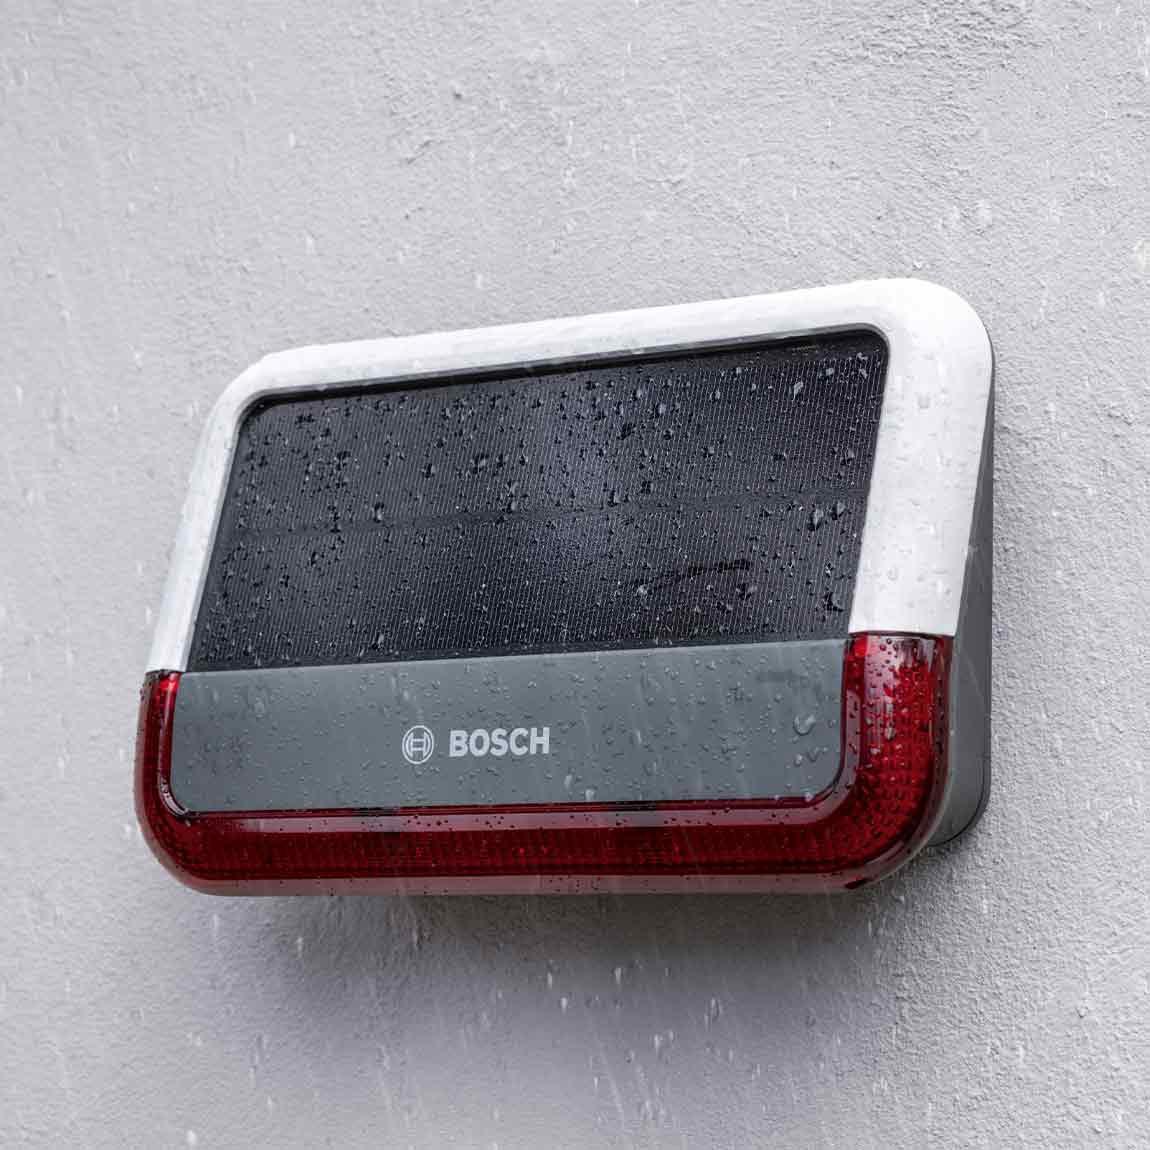 Bosch Smart Home Außensirene - Lifestyle - schraeg